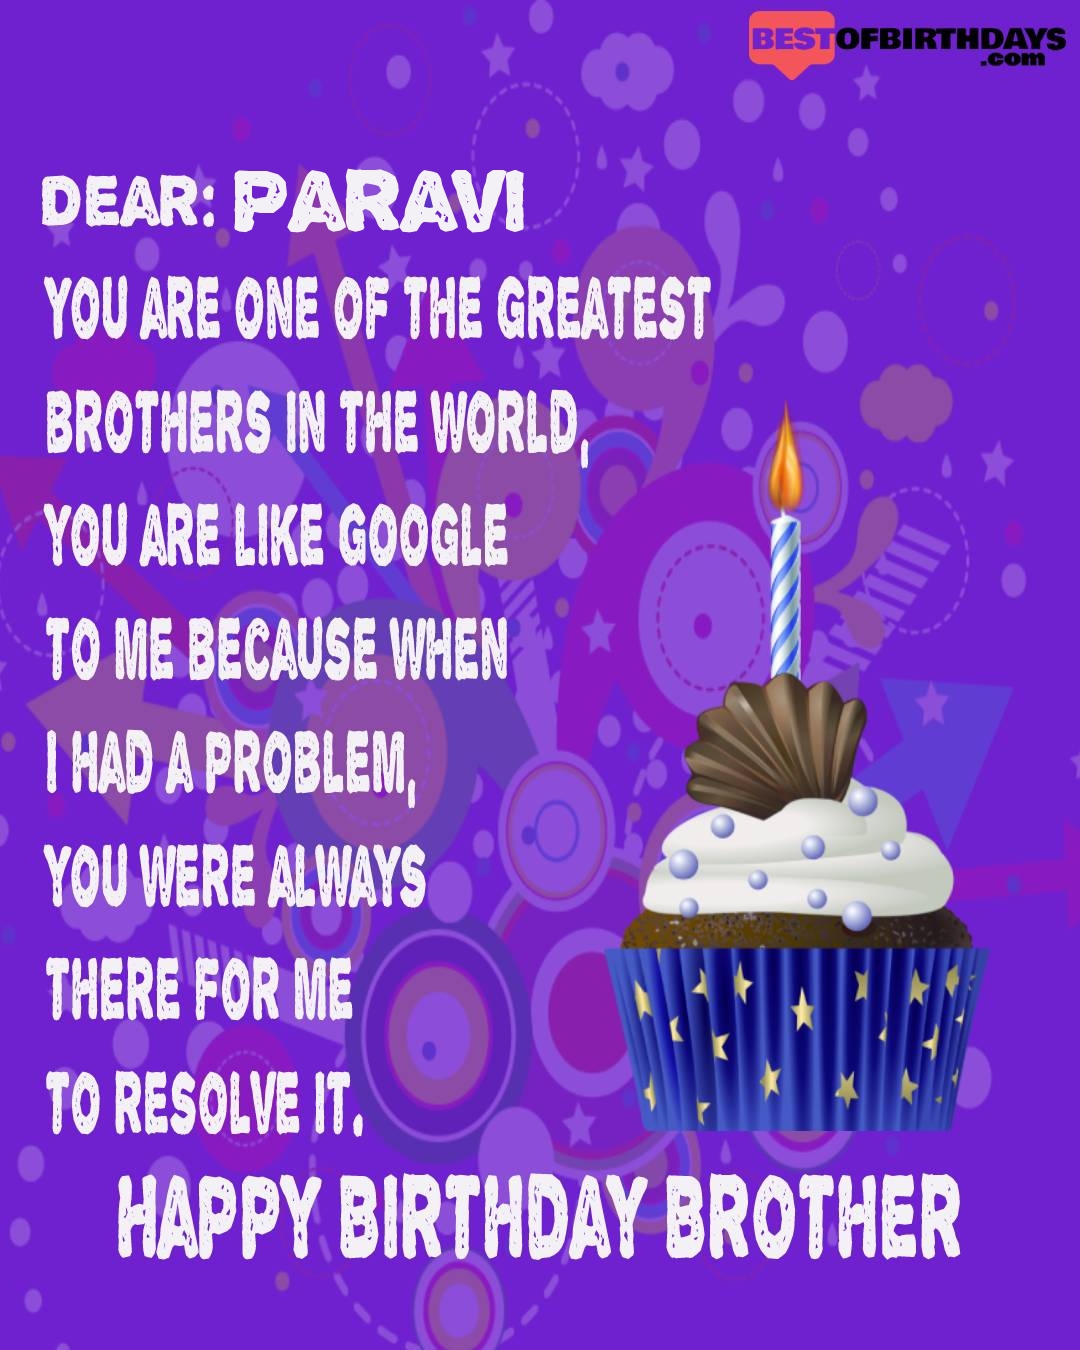 Happy birthday paravi bhai brother bro